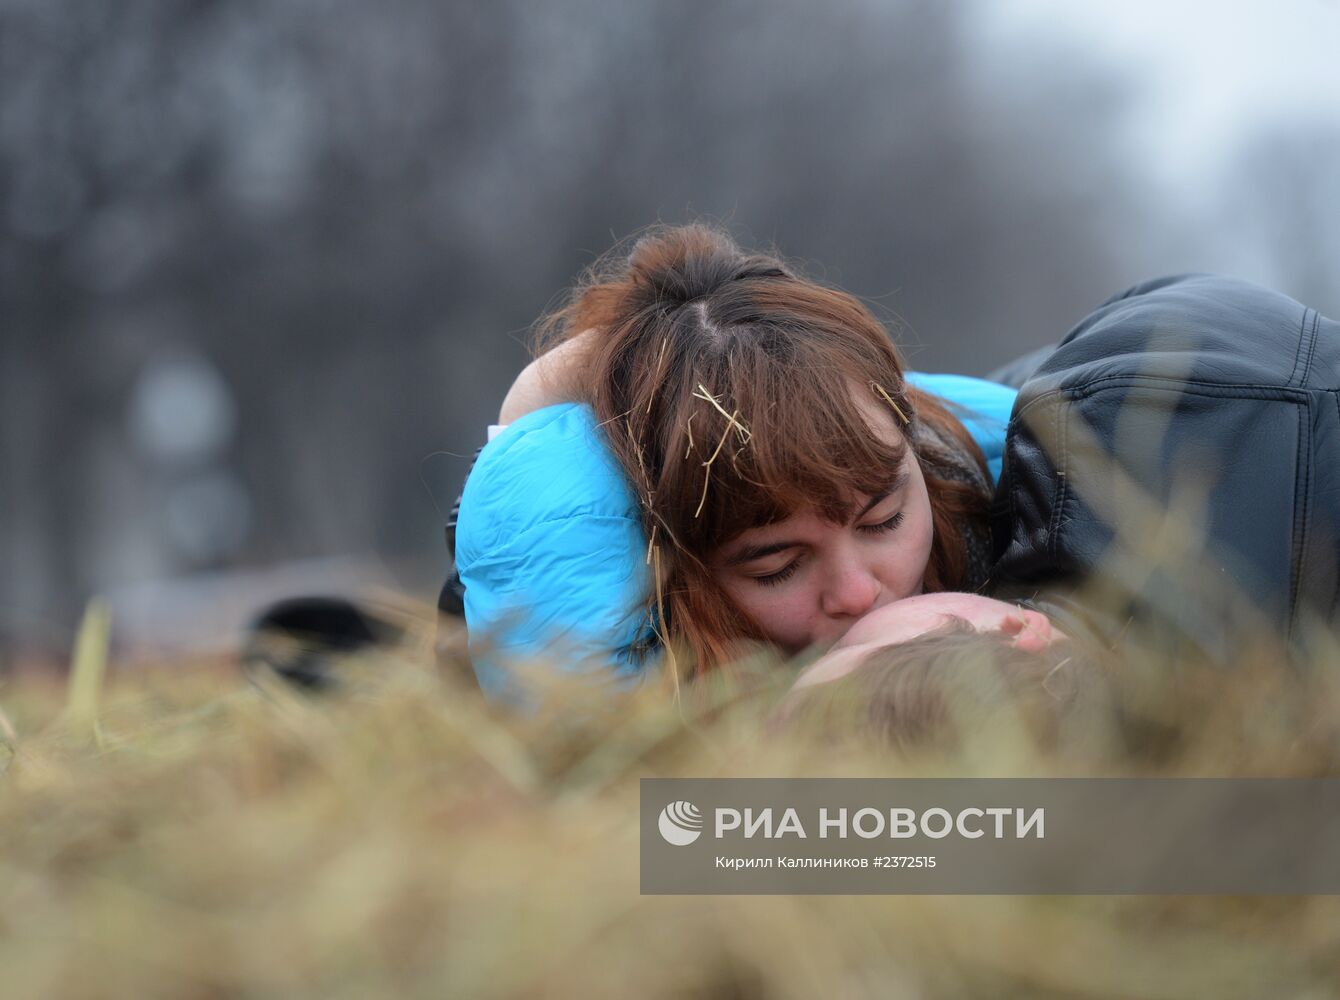 Трехметровый сеновал для влюбленных появился в парке Горького к Дню святого Валентина